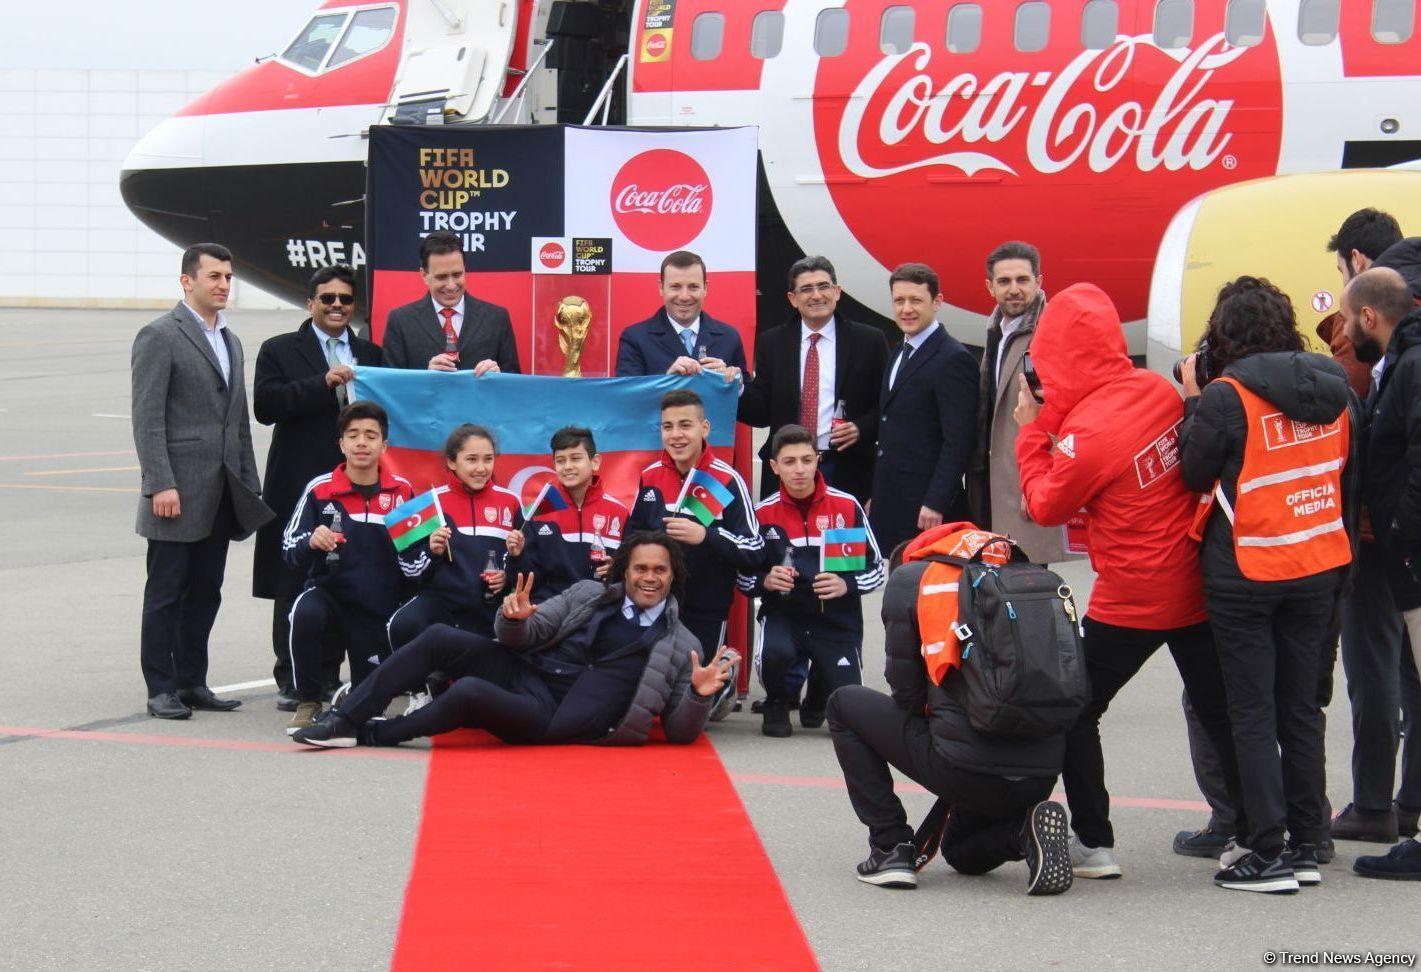 Кубок мира по футболу впервые привезен в Баку (ФОТО)